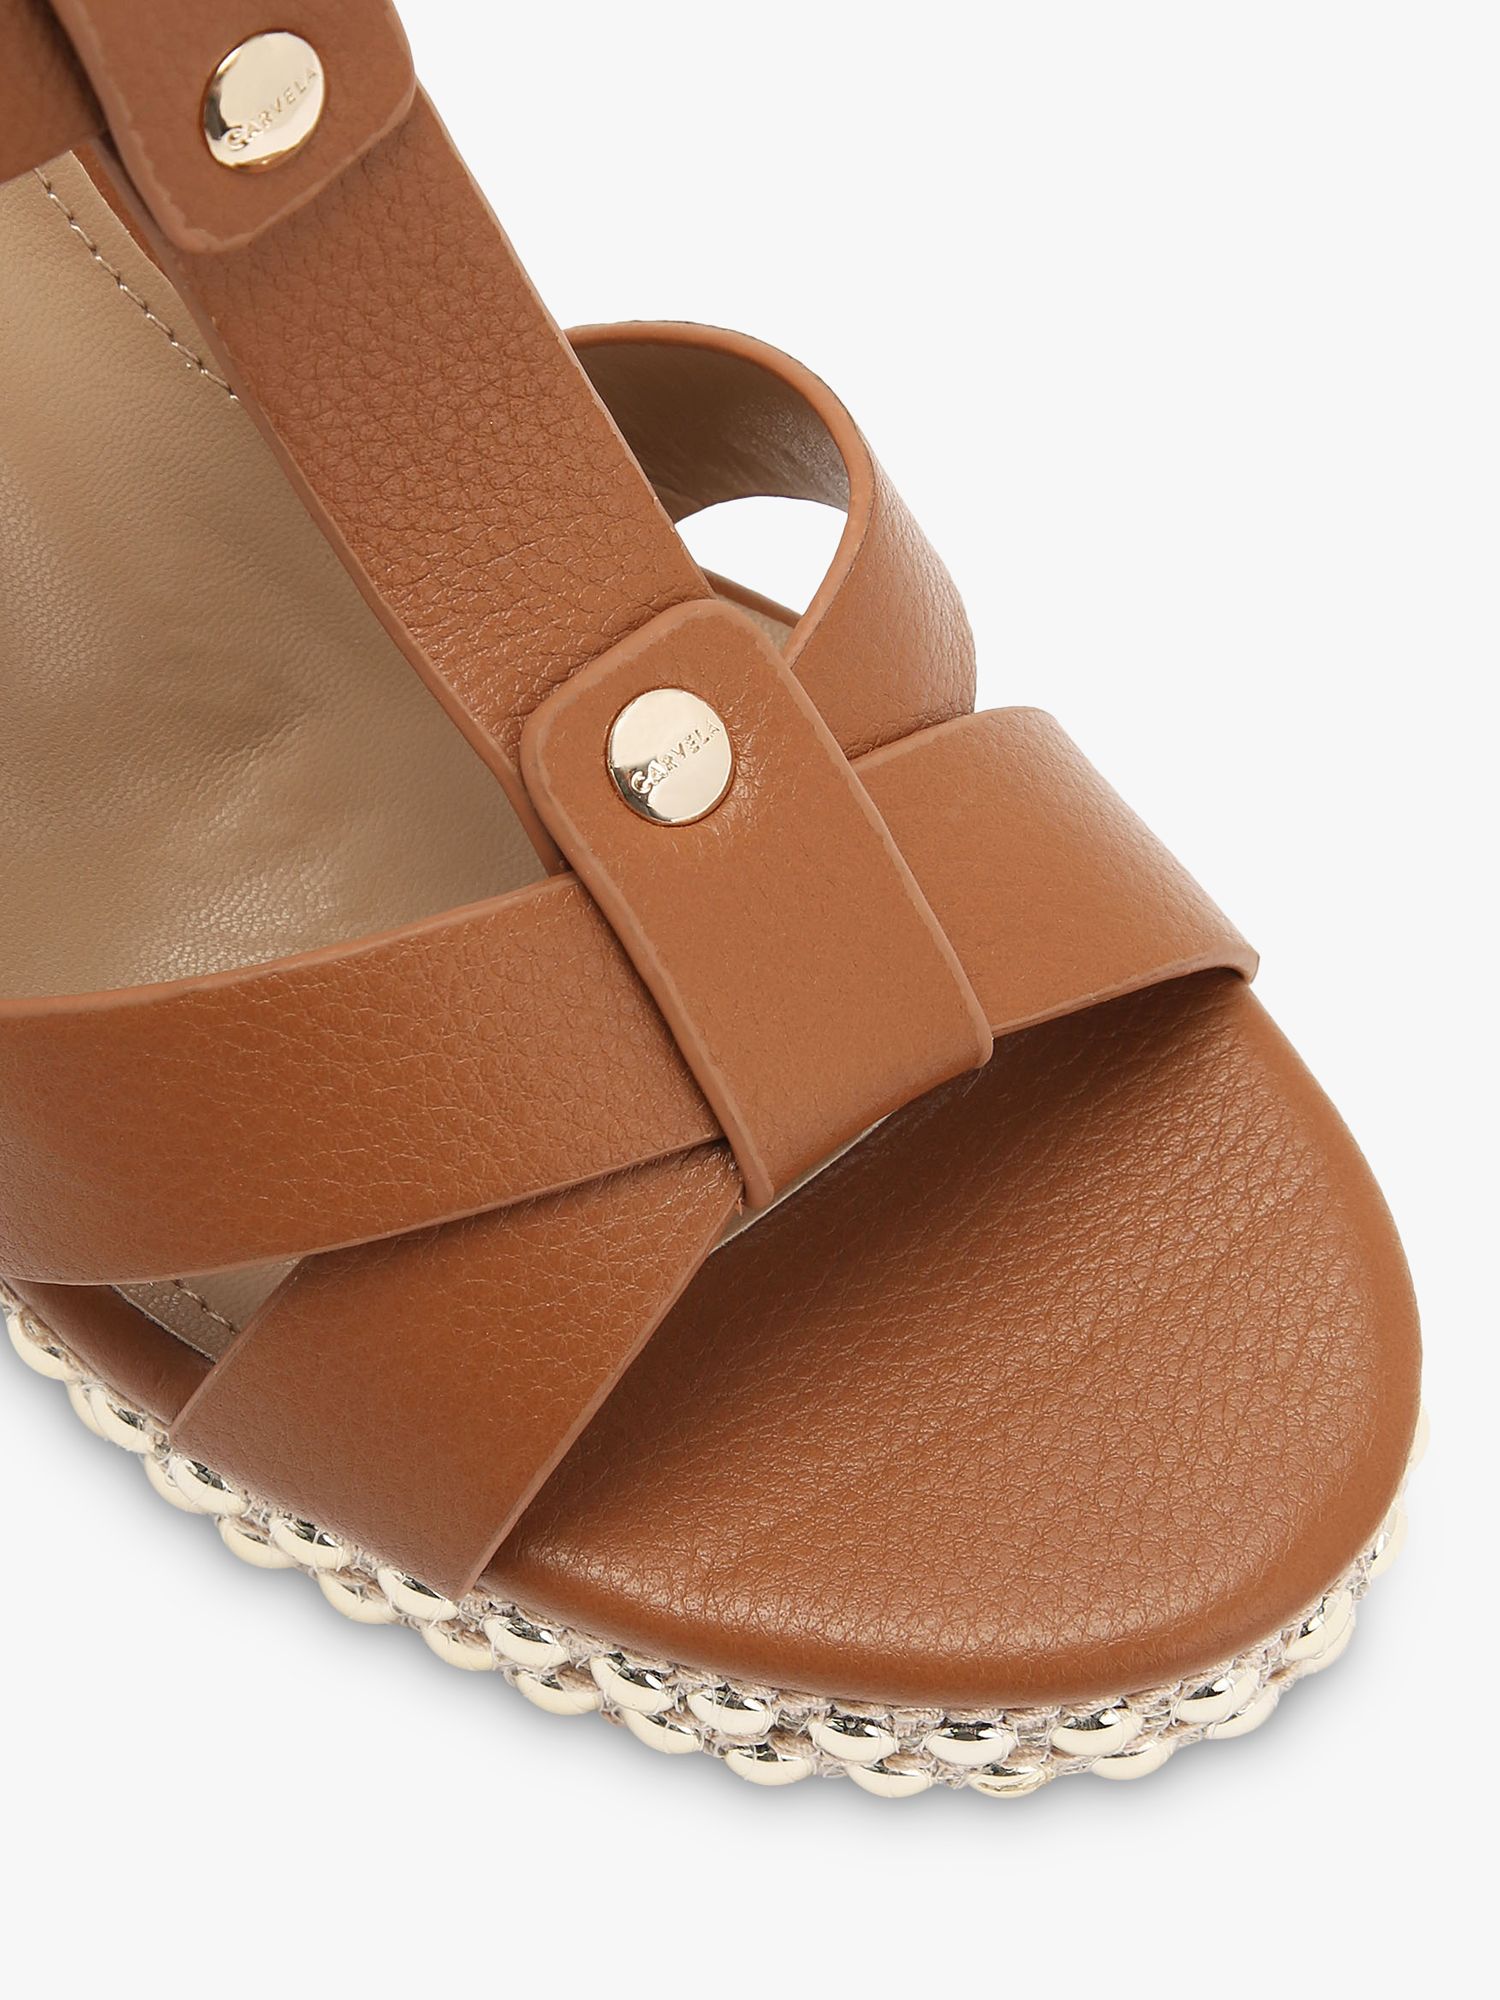 Buy Carvela Super Stud Wedge Heel Sandals Online at johnlewis.com